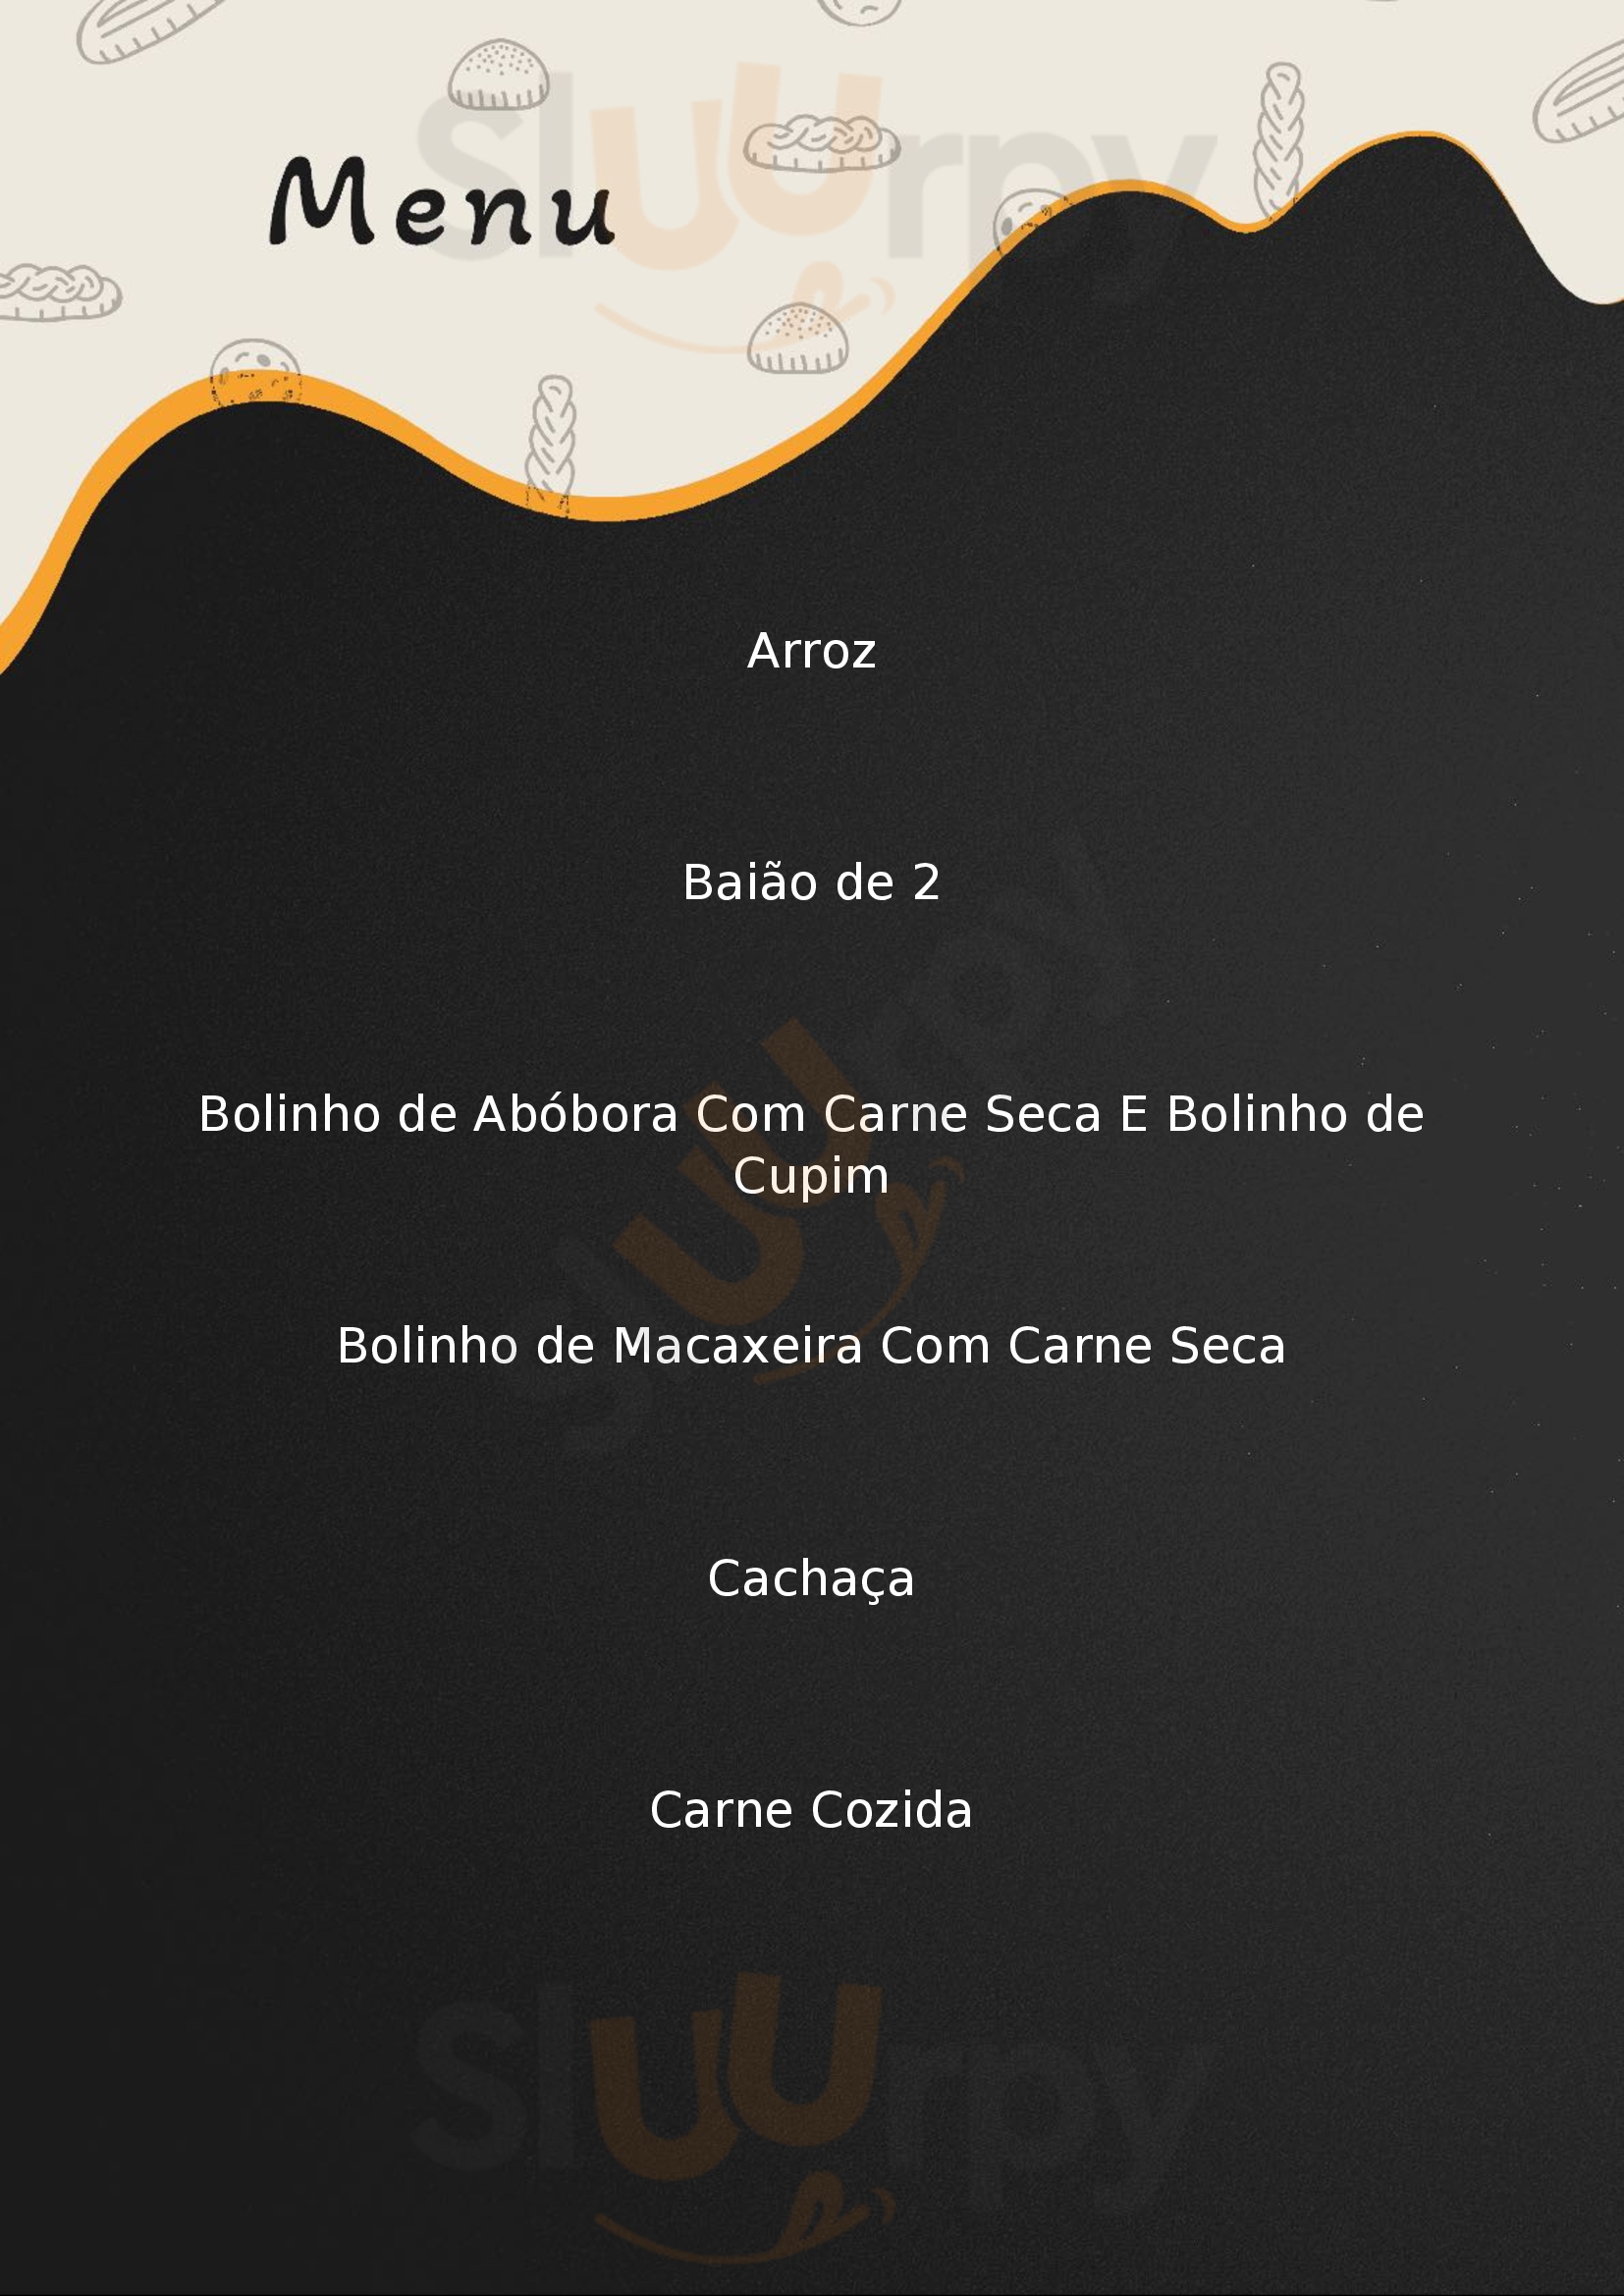 Macaxeira Perdizes Restaurante & Cachaçaria São Paulo Menu - 1